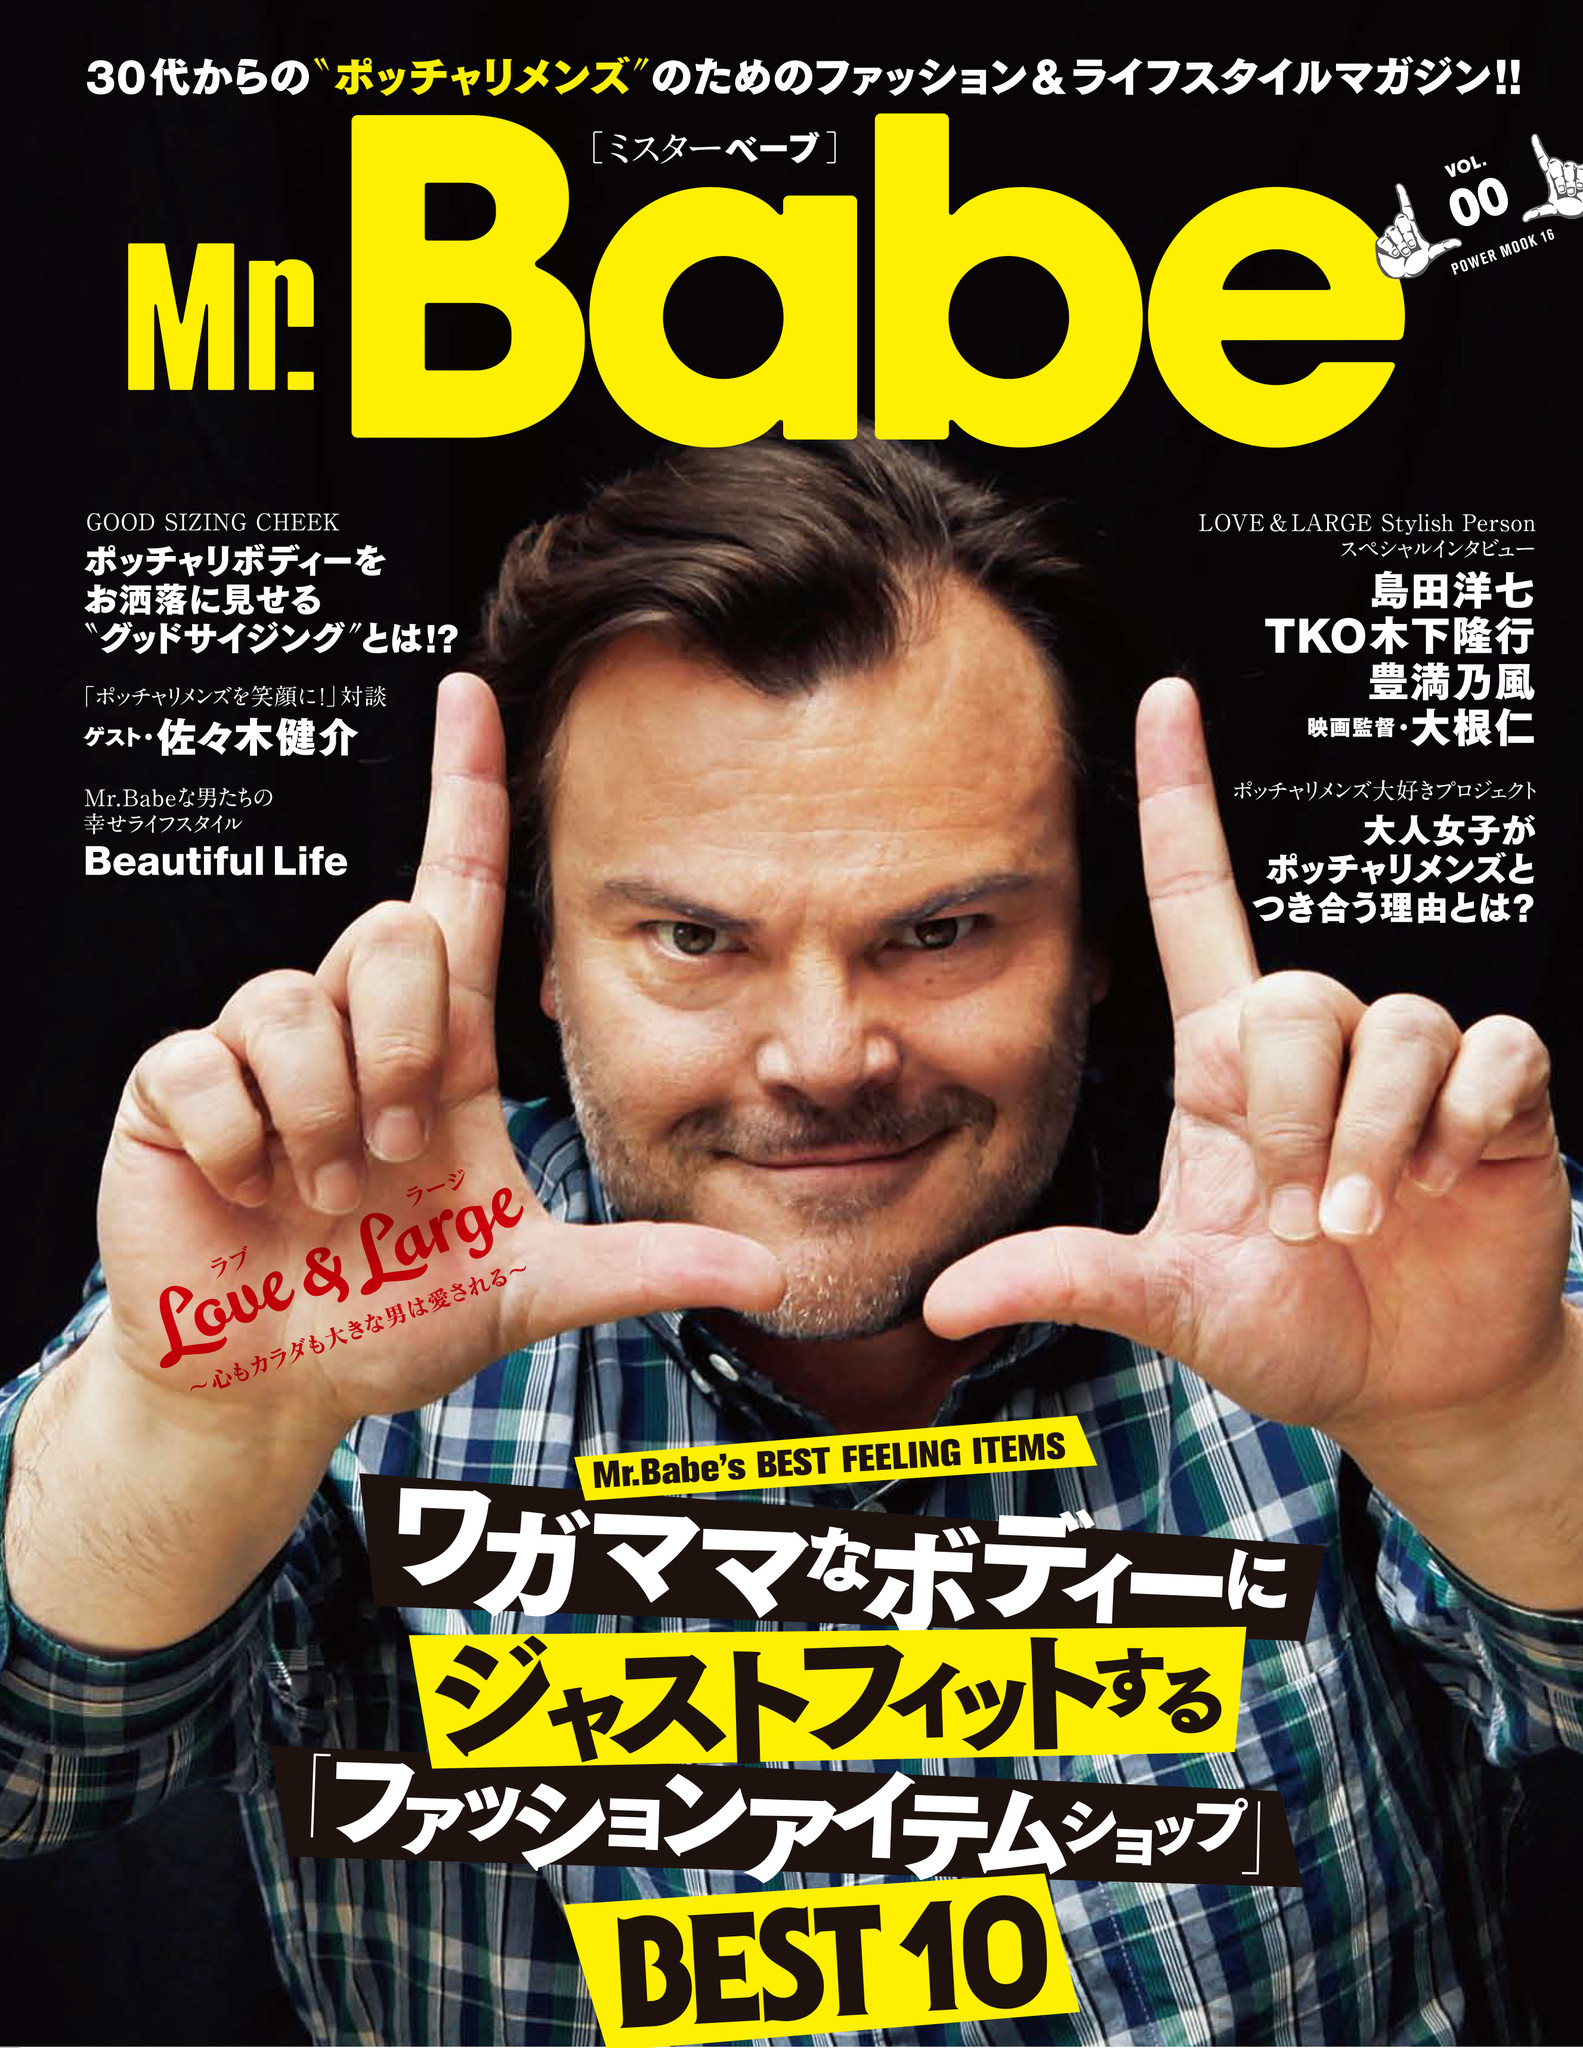 日本初 ポッチャリ系メンズのためのファッション誌 Mr Babe 公式応援マネージャーに佐藤聖羅が就任 株式会社大洋図書のプレスリリース